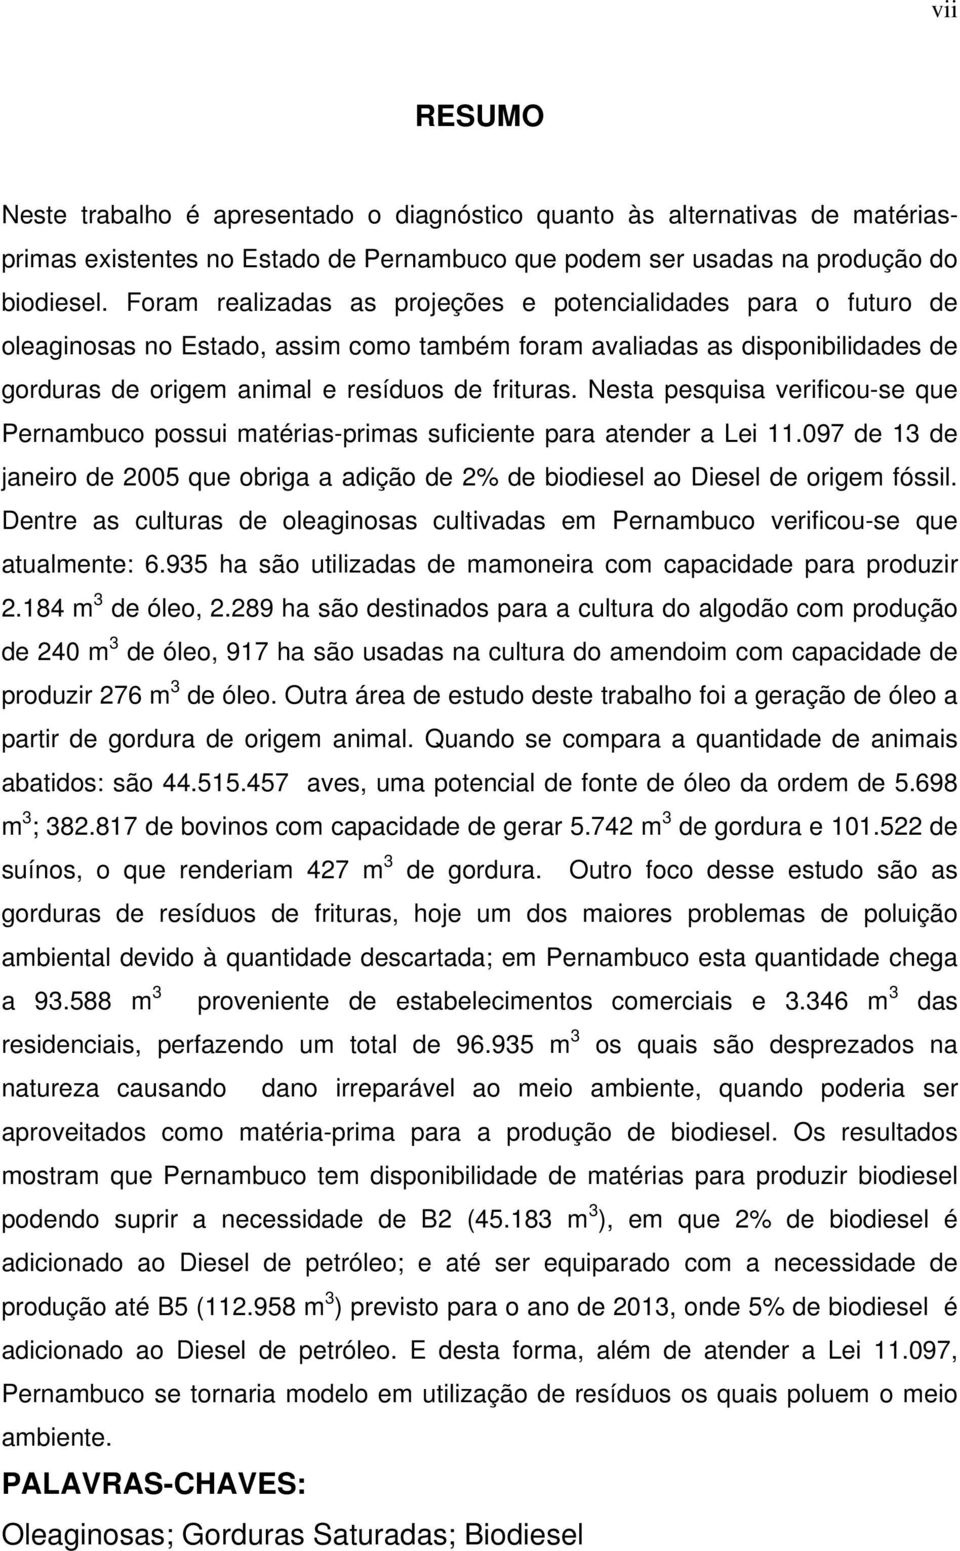 Nesta pesquisa verificou-se que Pernambuco possui matérias-primas suficiente para atender a Lei 11.097 de 13 de janeiro de 2005 que obriga a adição de 2% de biodiesel ao Diesel de origem fóssil.